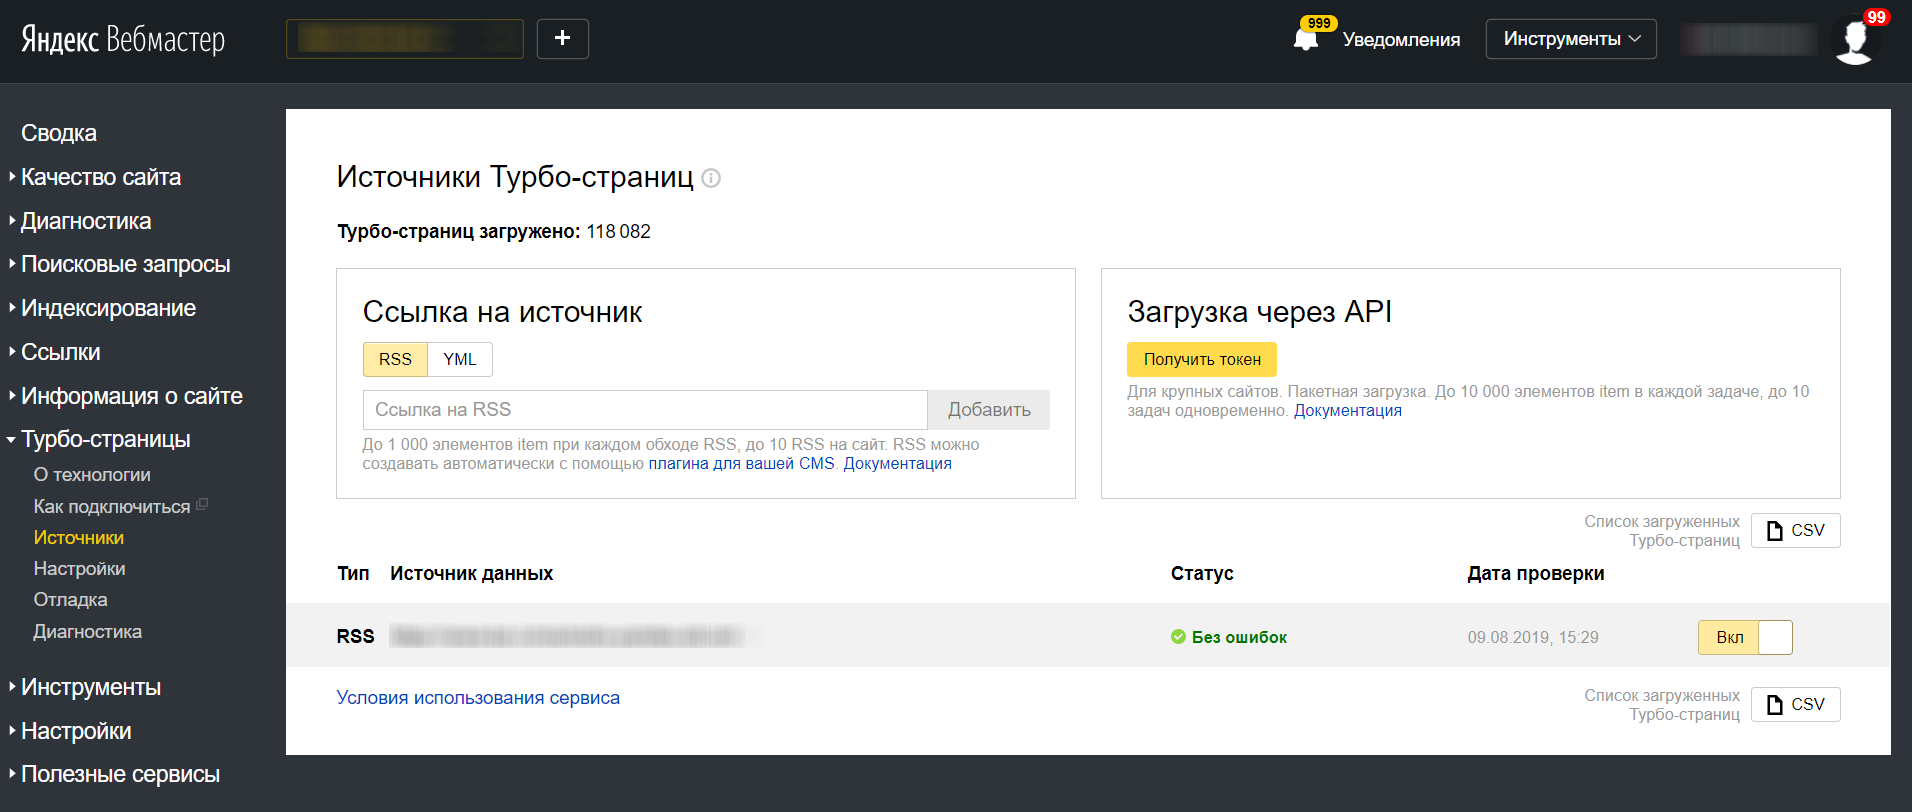 Яндекс.Вебмастер позволил просматривать список действующих Турбо-страниц